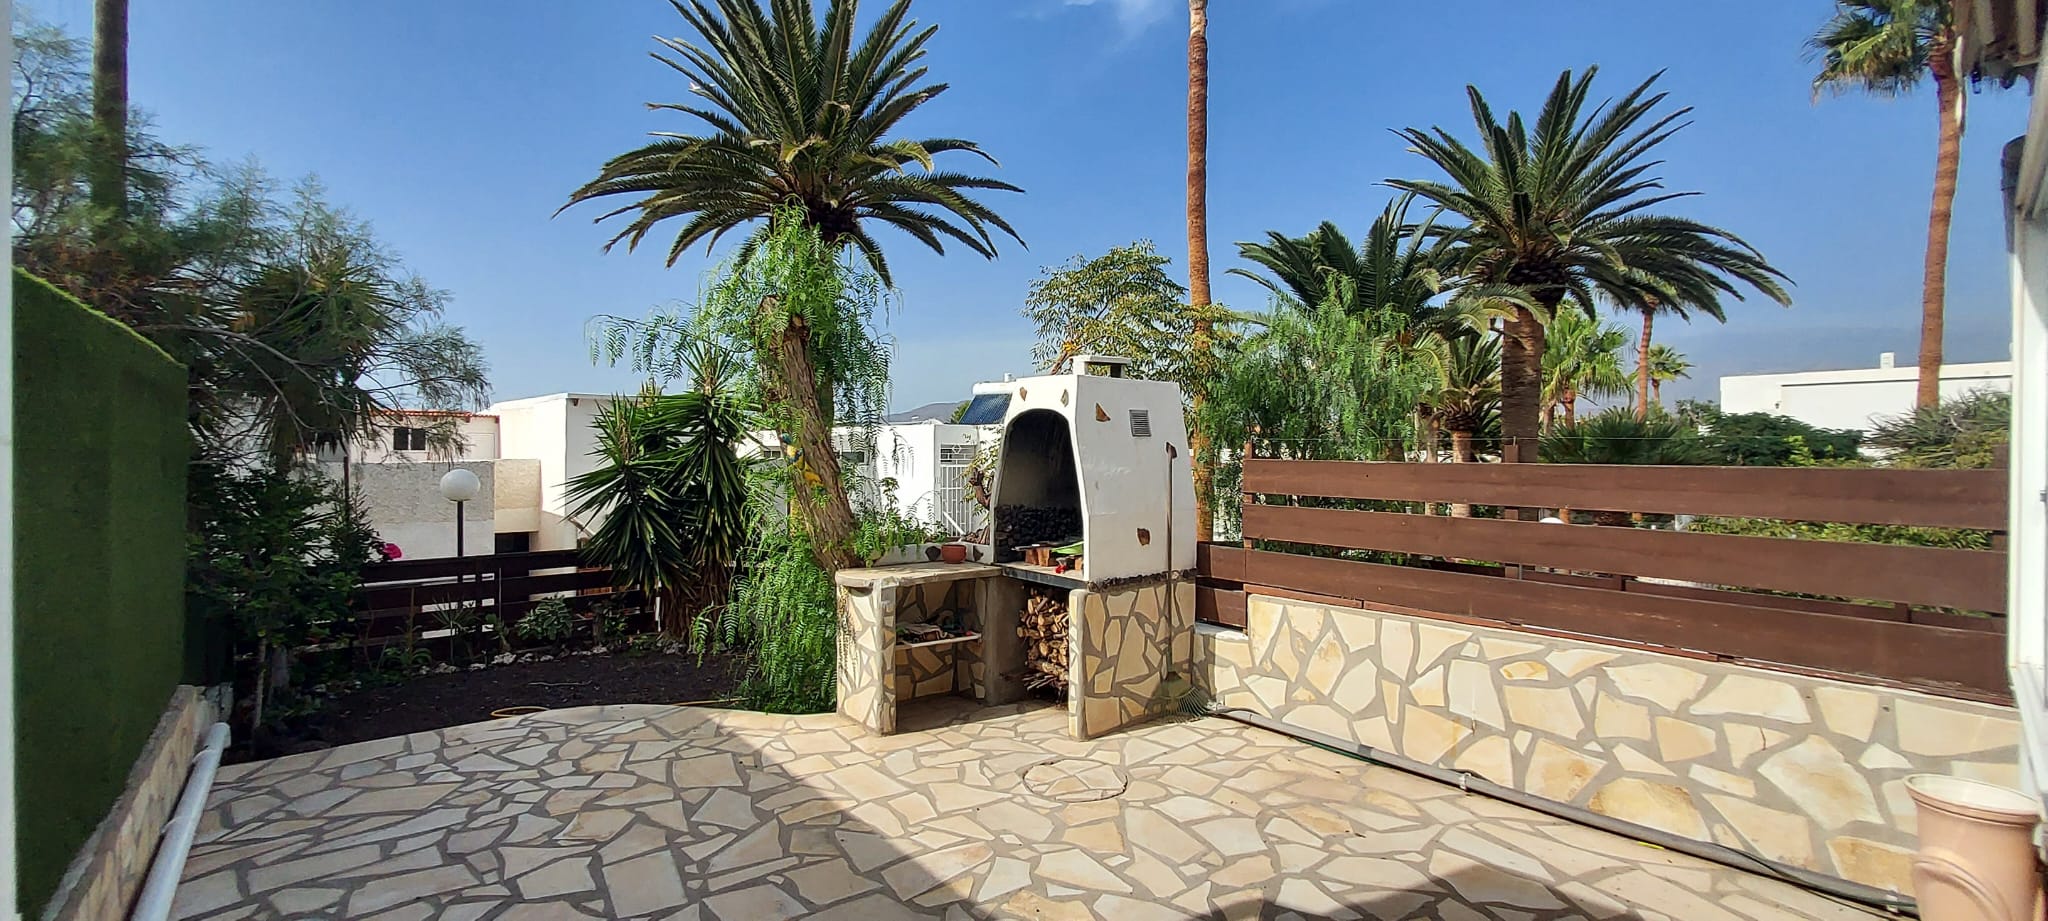 Encantadora Casa Residencial en la Exclusiva Residencia Carabela, Costa del Silencio, Tenerife Sur